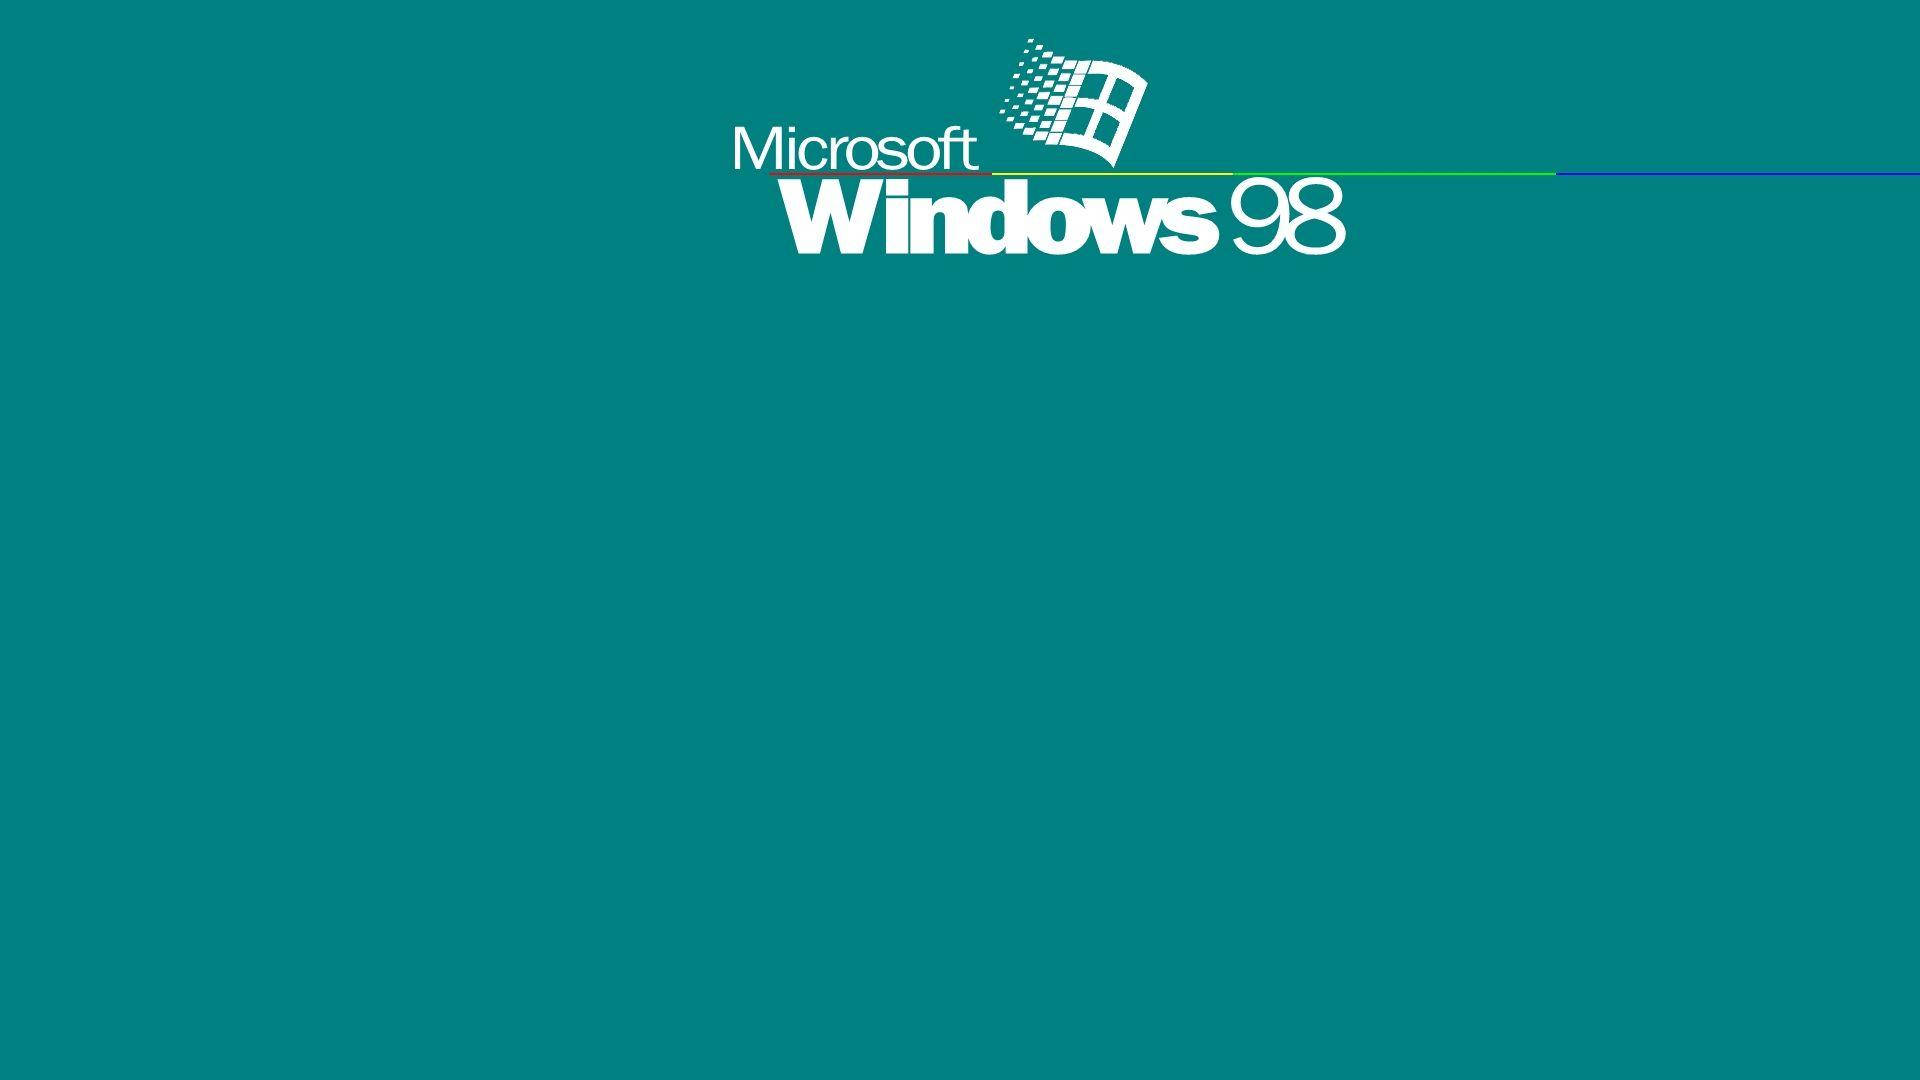 Erinnerungan Die Guten Alten Zeiten Mit Windows 98 Wallpaper